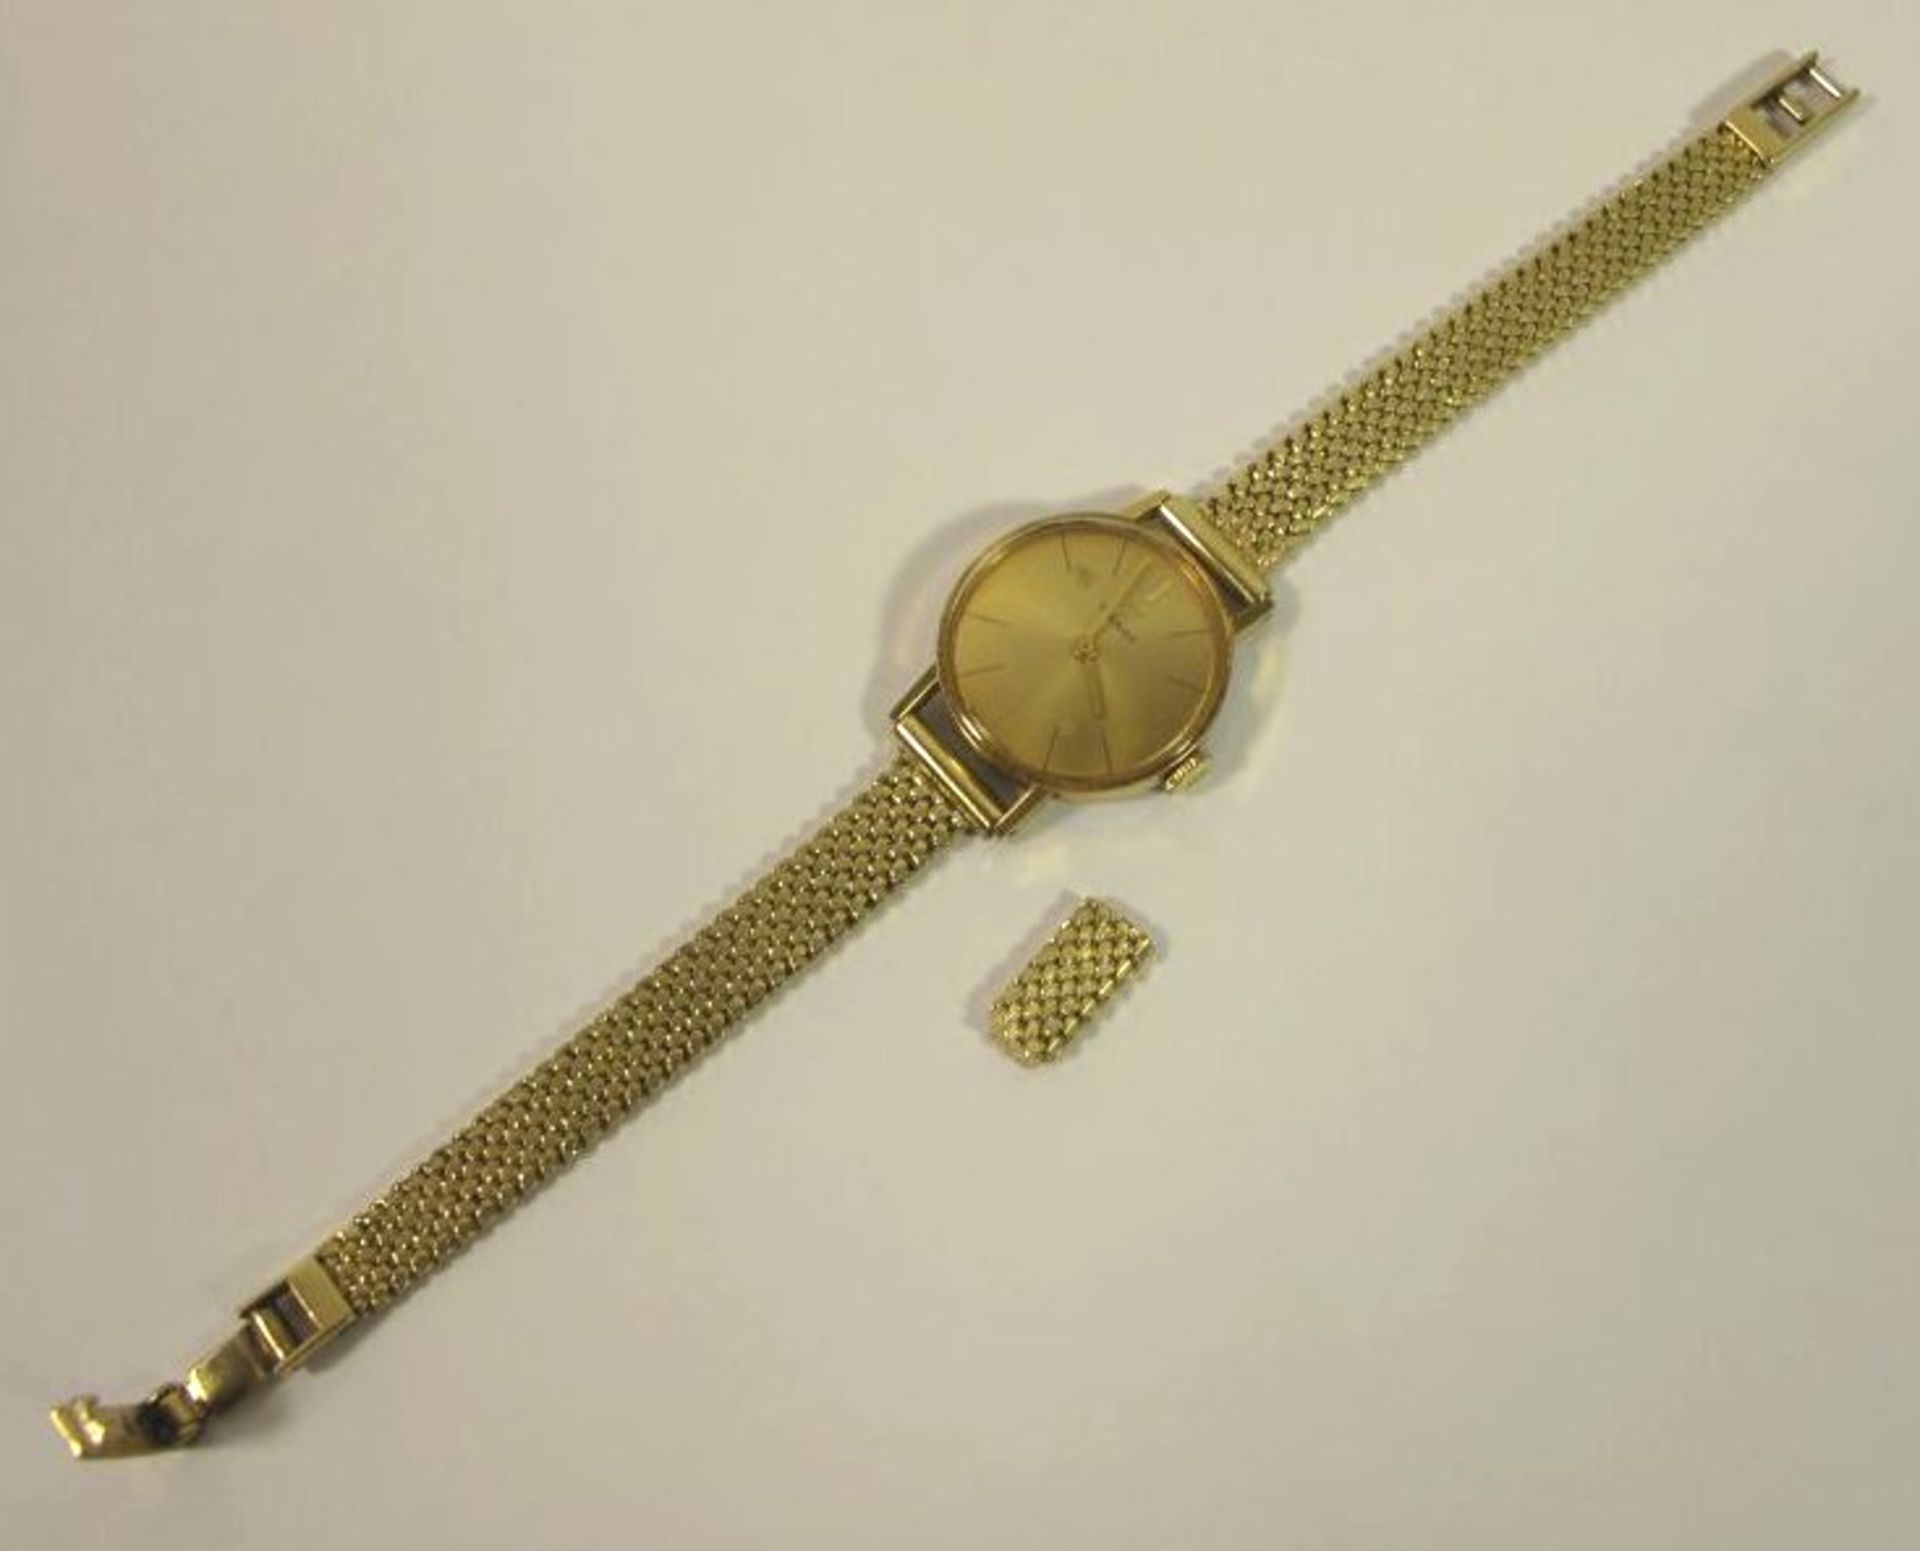 DAU "Tissot", 585er GG Armband, Werk läuft, Tragespuren, anbei Stück vom Armband, komplett 27,7g,